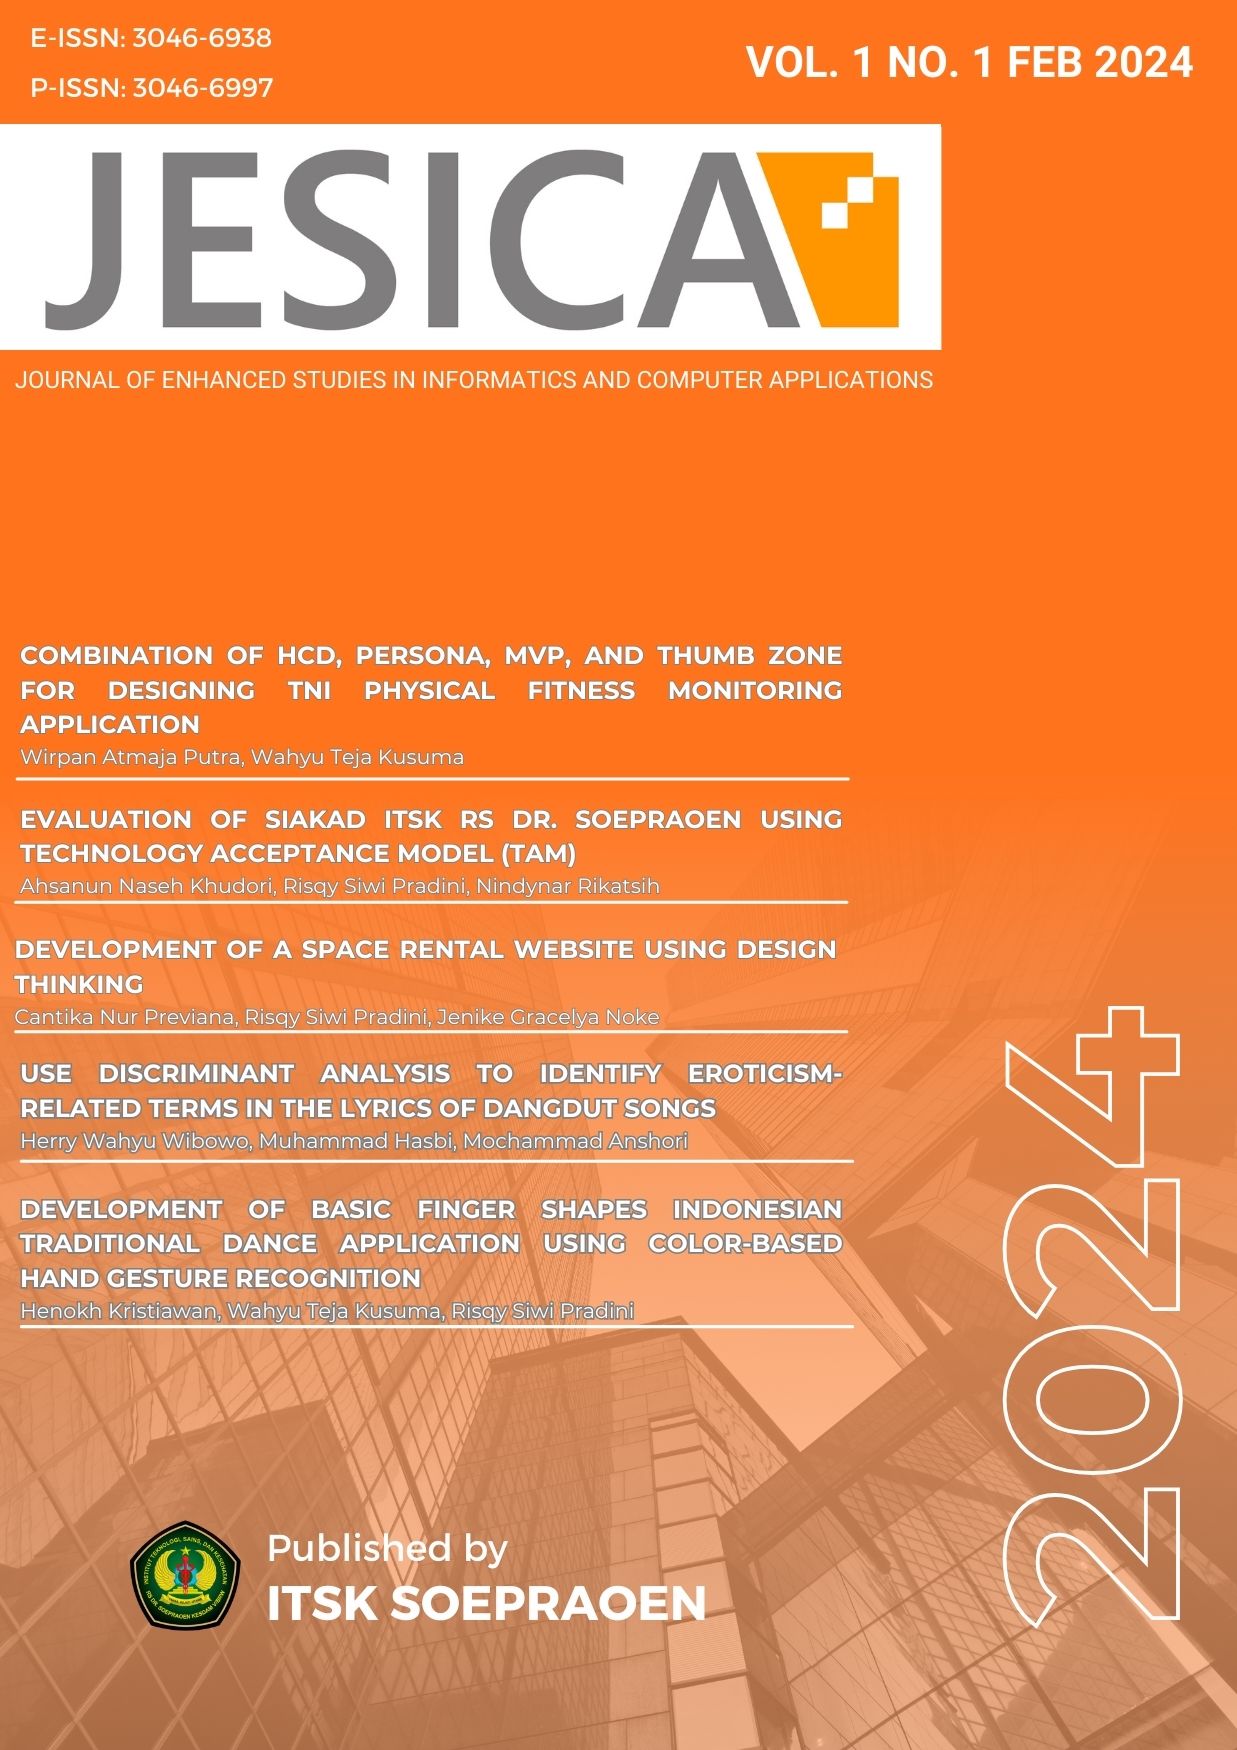 JESICA Vol 1 No 1 2024